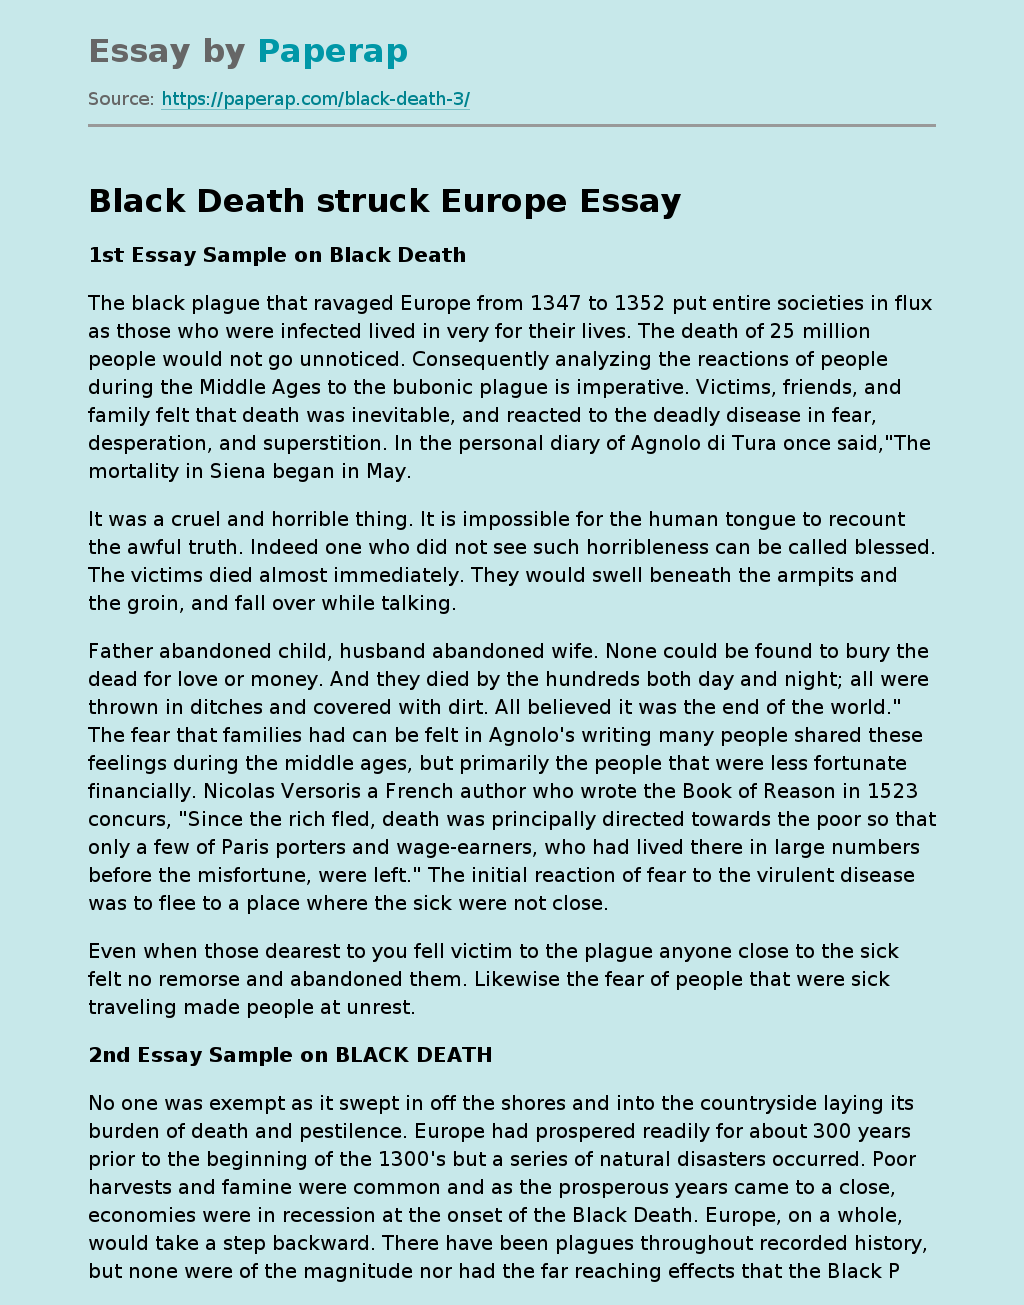 1st Essay Sample on Black Death